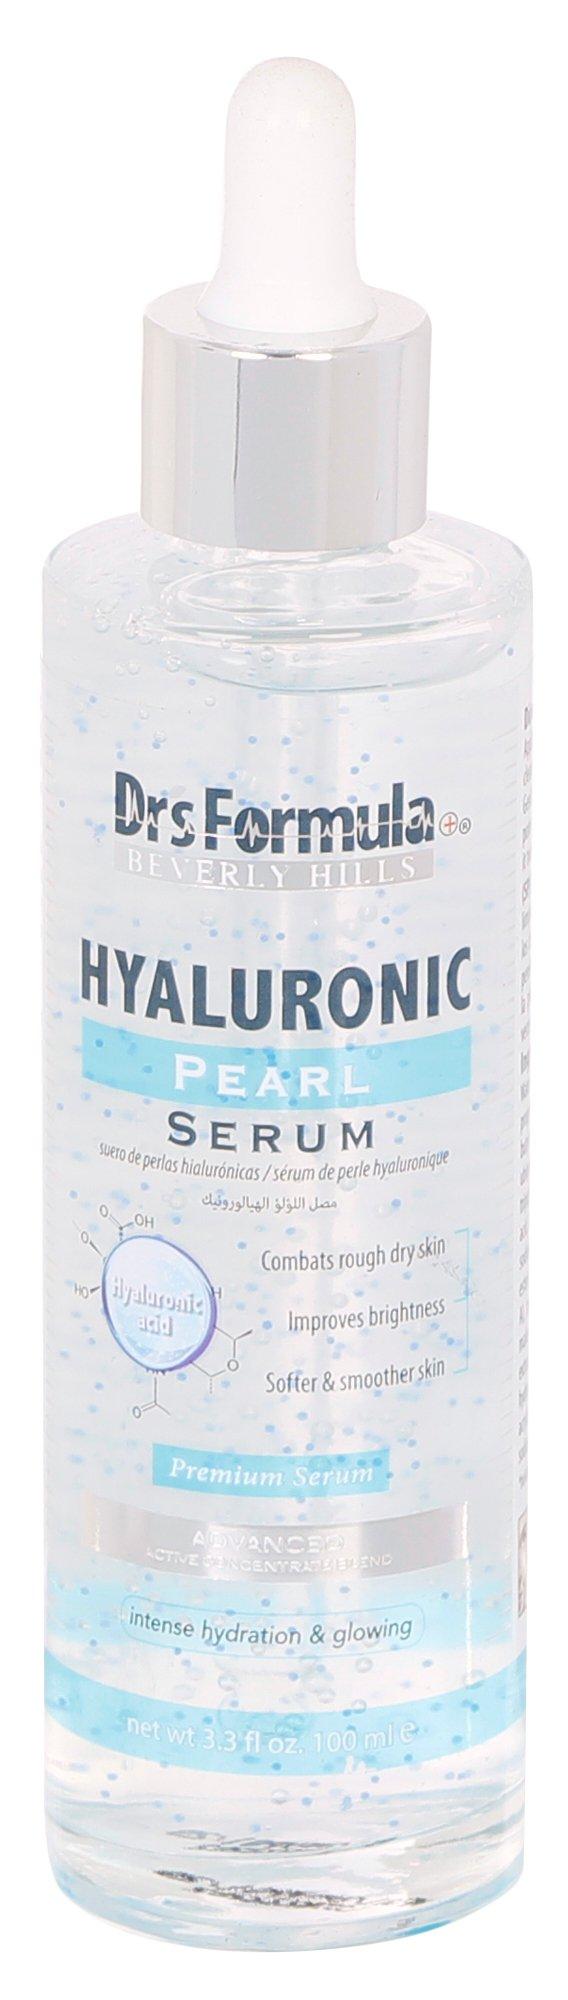 Hyaluronic Pearl Facial Serum